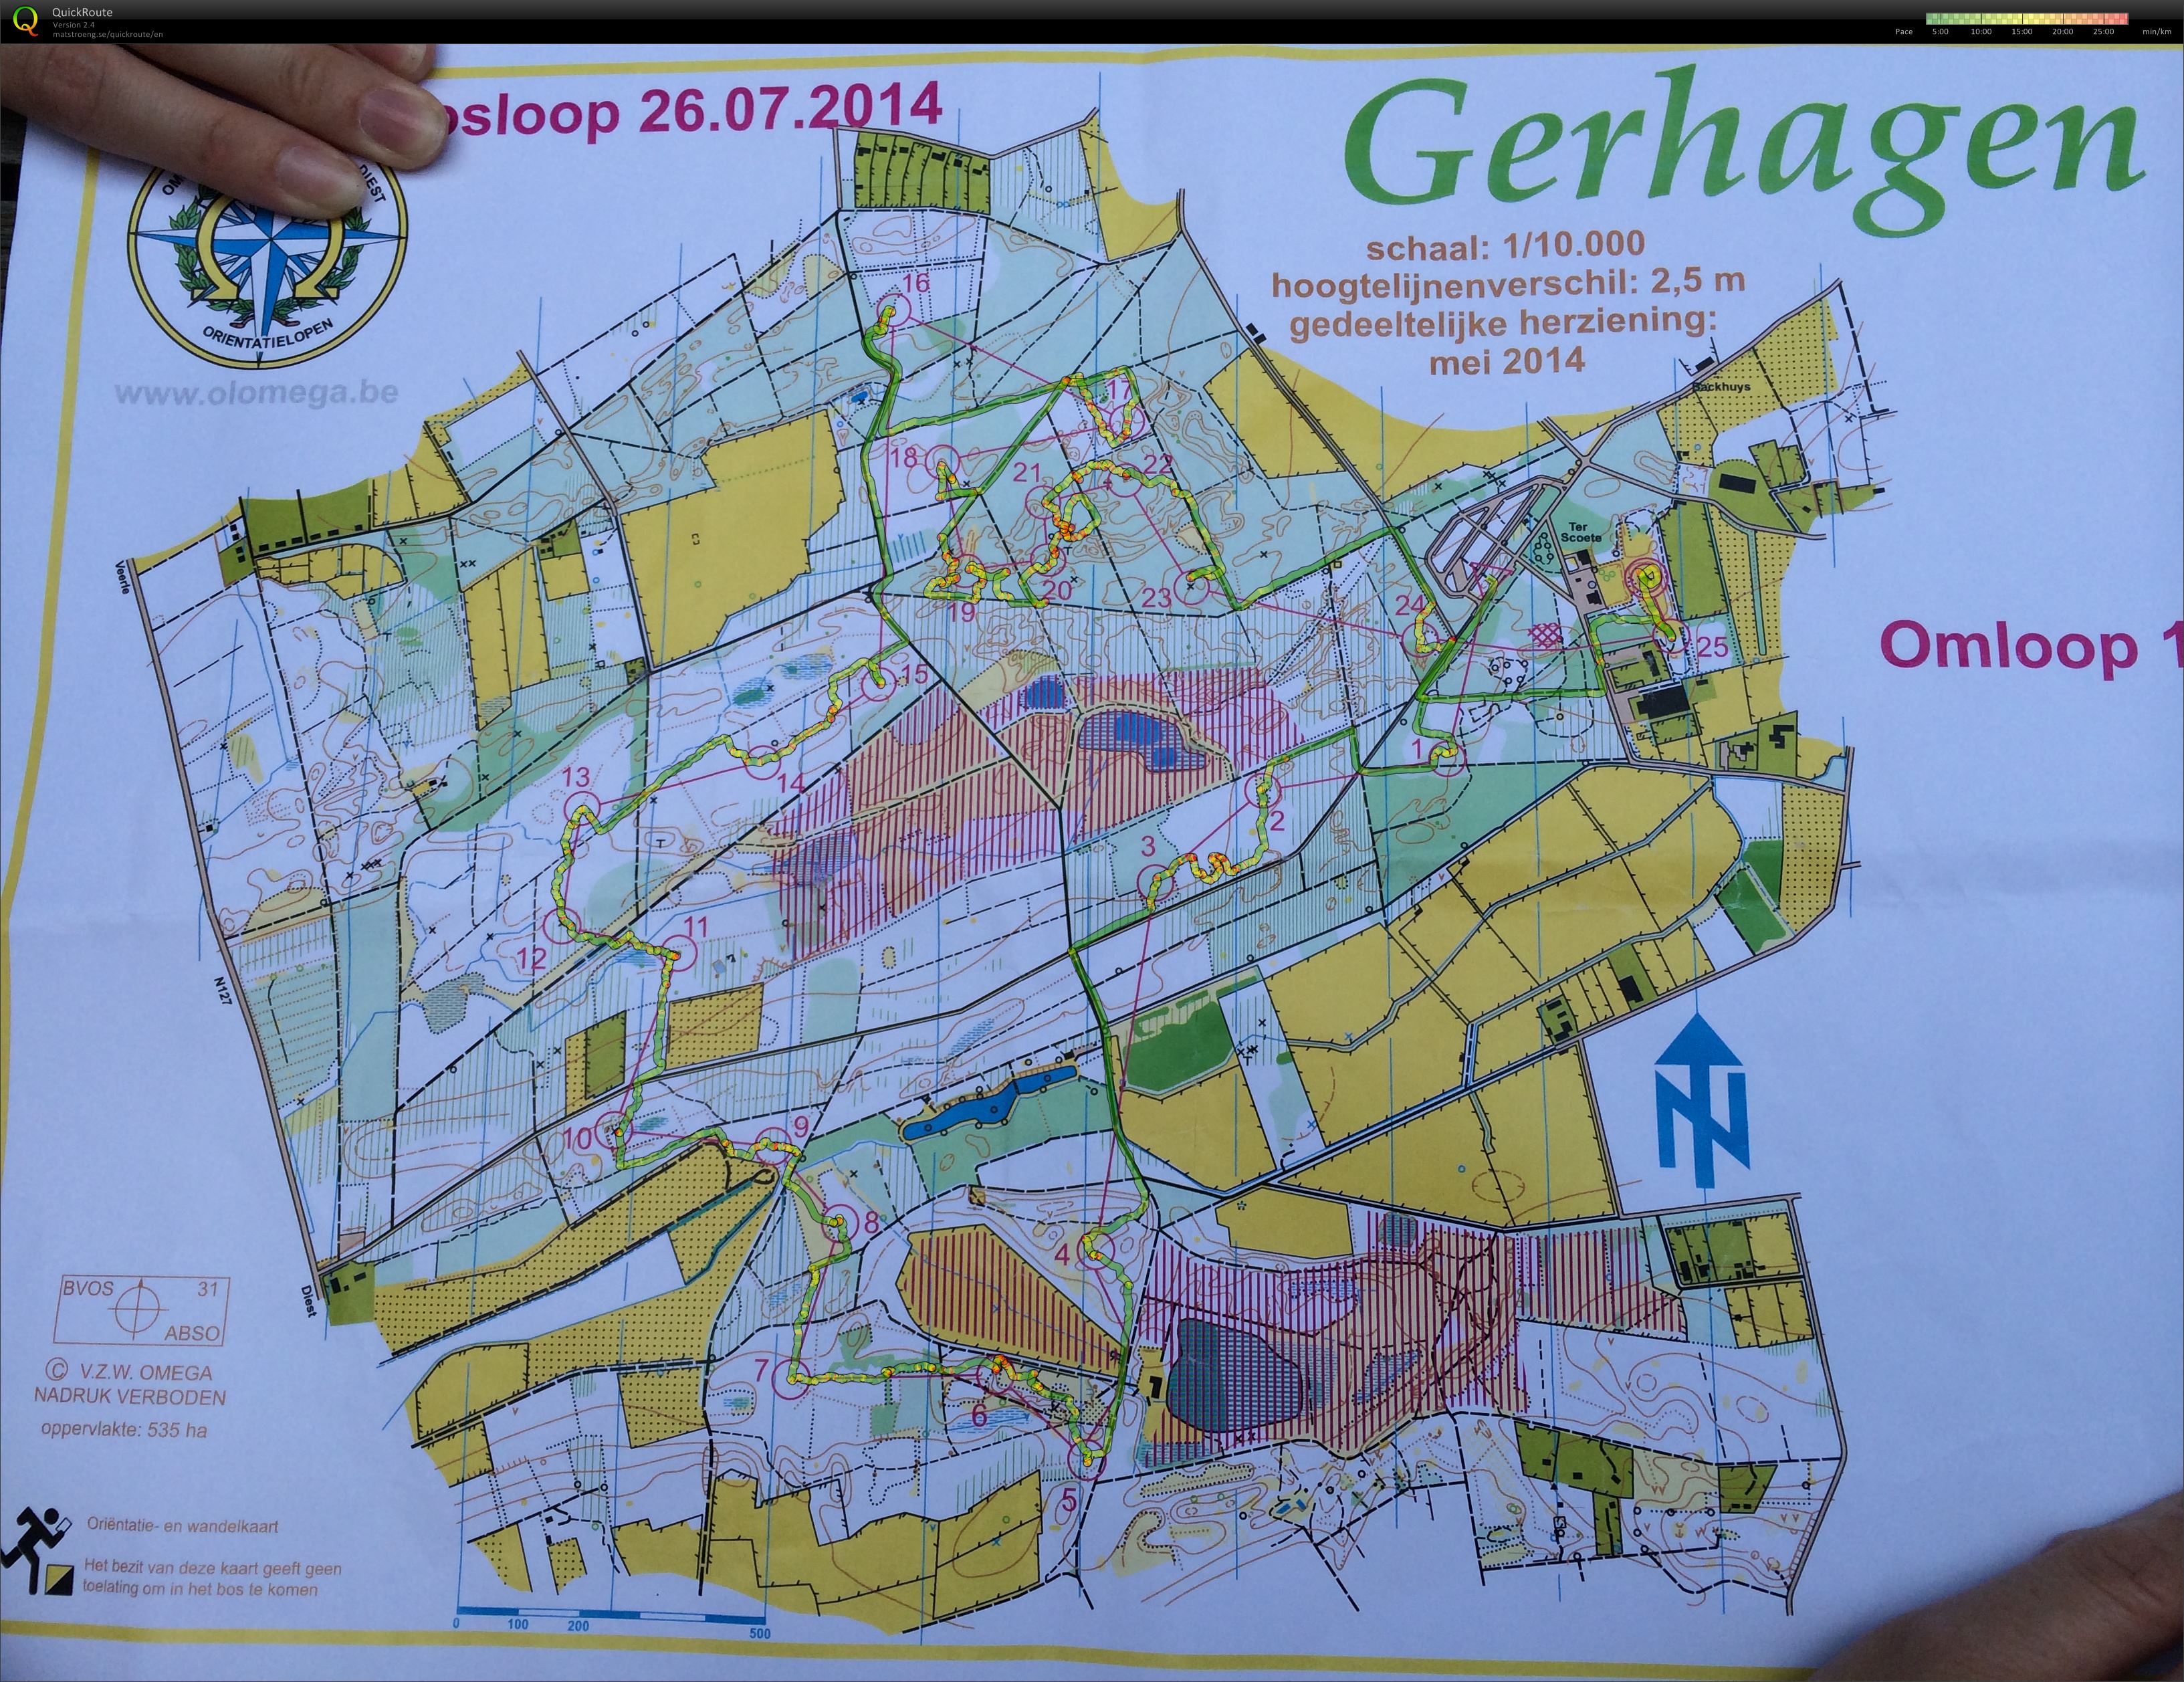 Regionale Gerhagen (26/07/2014)